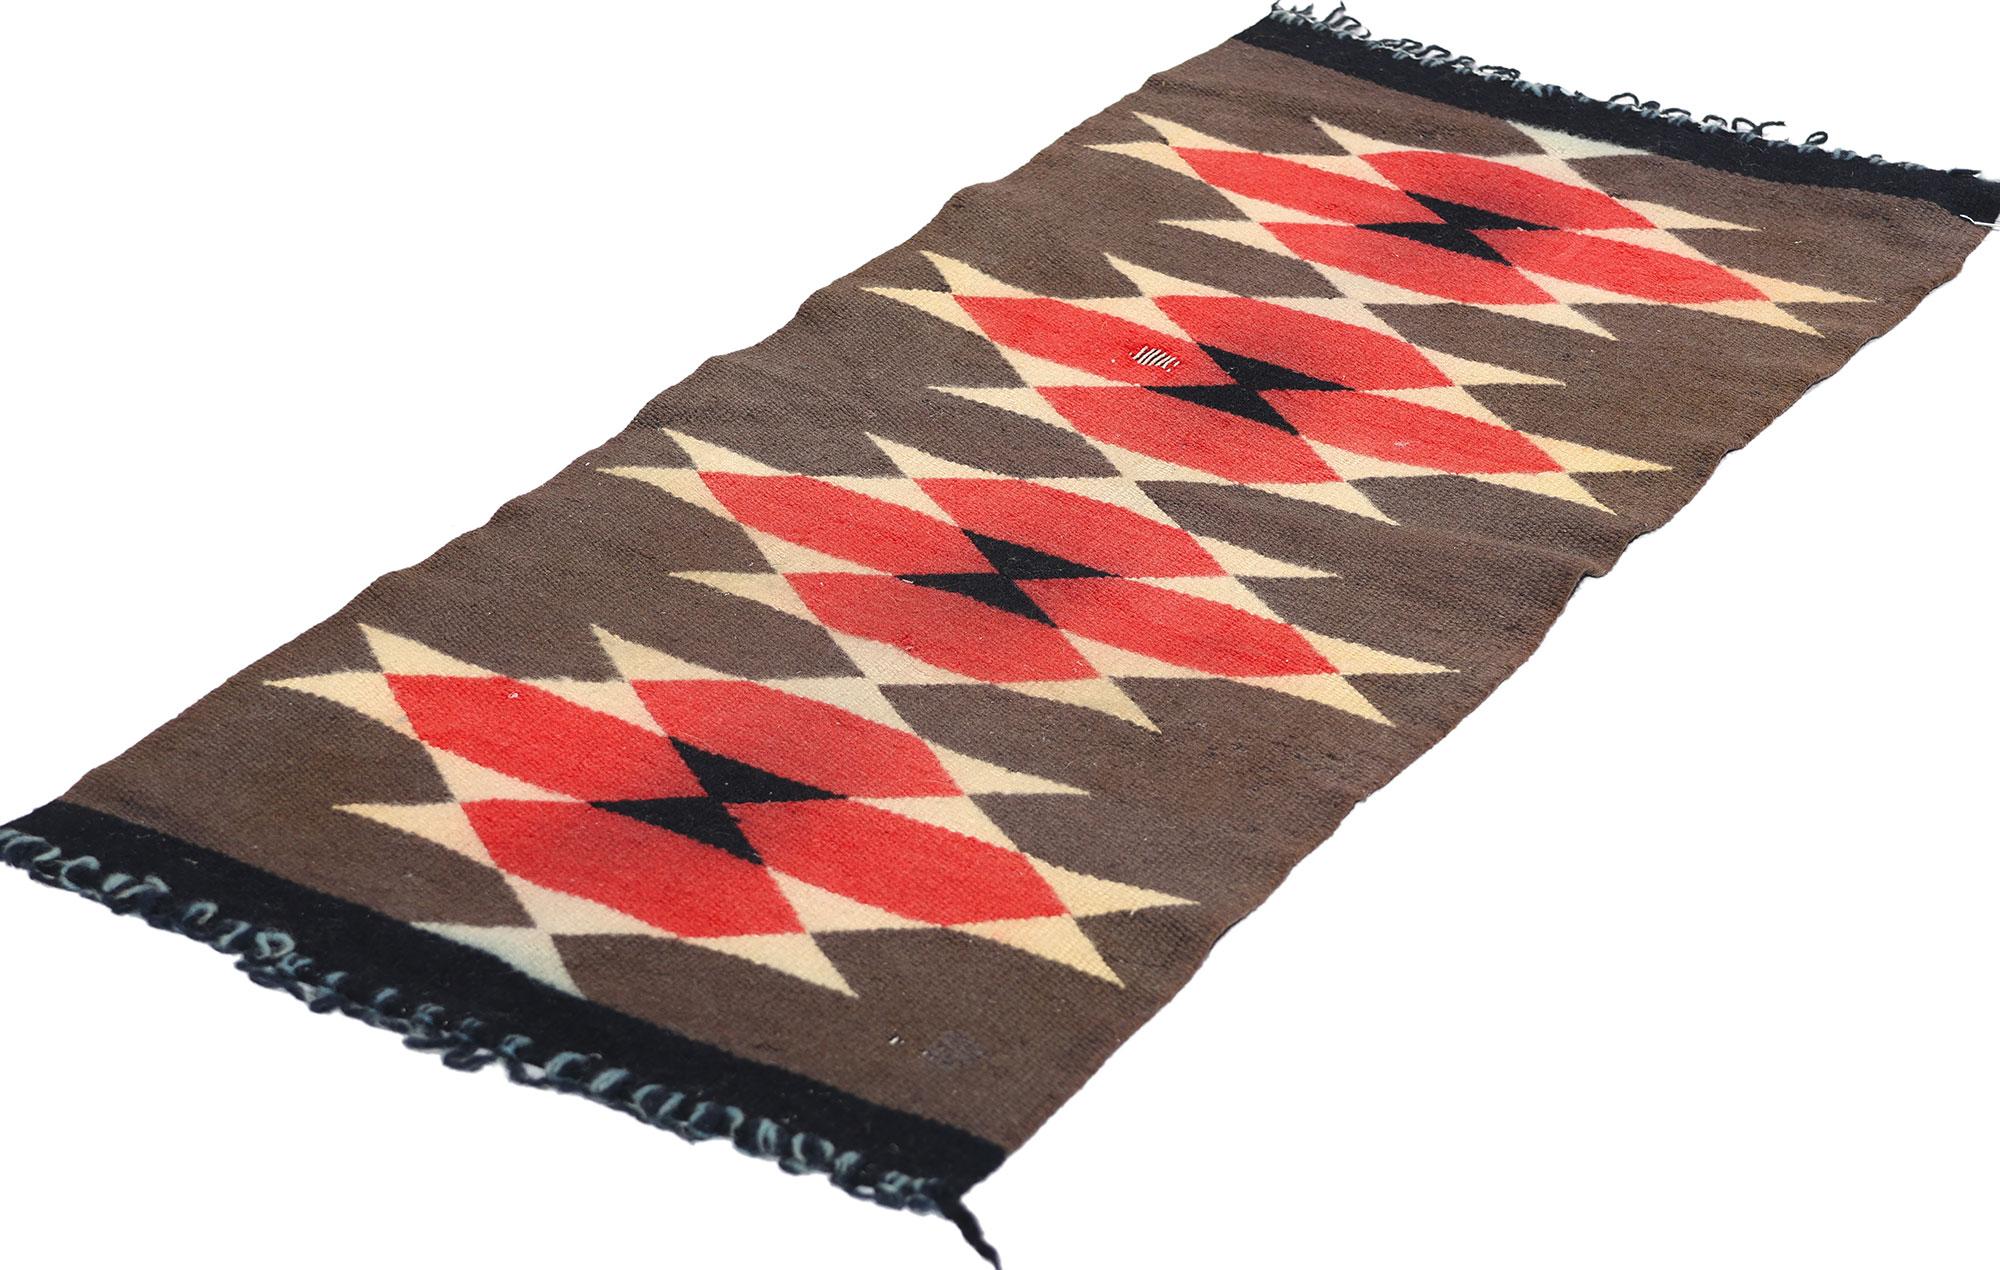 78749 Tapis Navajo Antique Ganado,  01'03 x 02'10. Les tapis Navajo de Ganado sont des textiles tissés à la main dans la région de Ganado, au nord-est de l'Arizona. Ils sont fabriqués par des artisans Navajo qui utilisent principalement de la laine